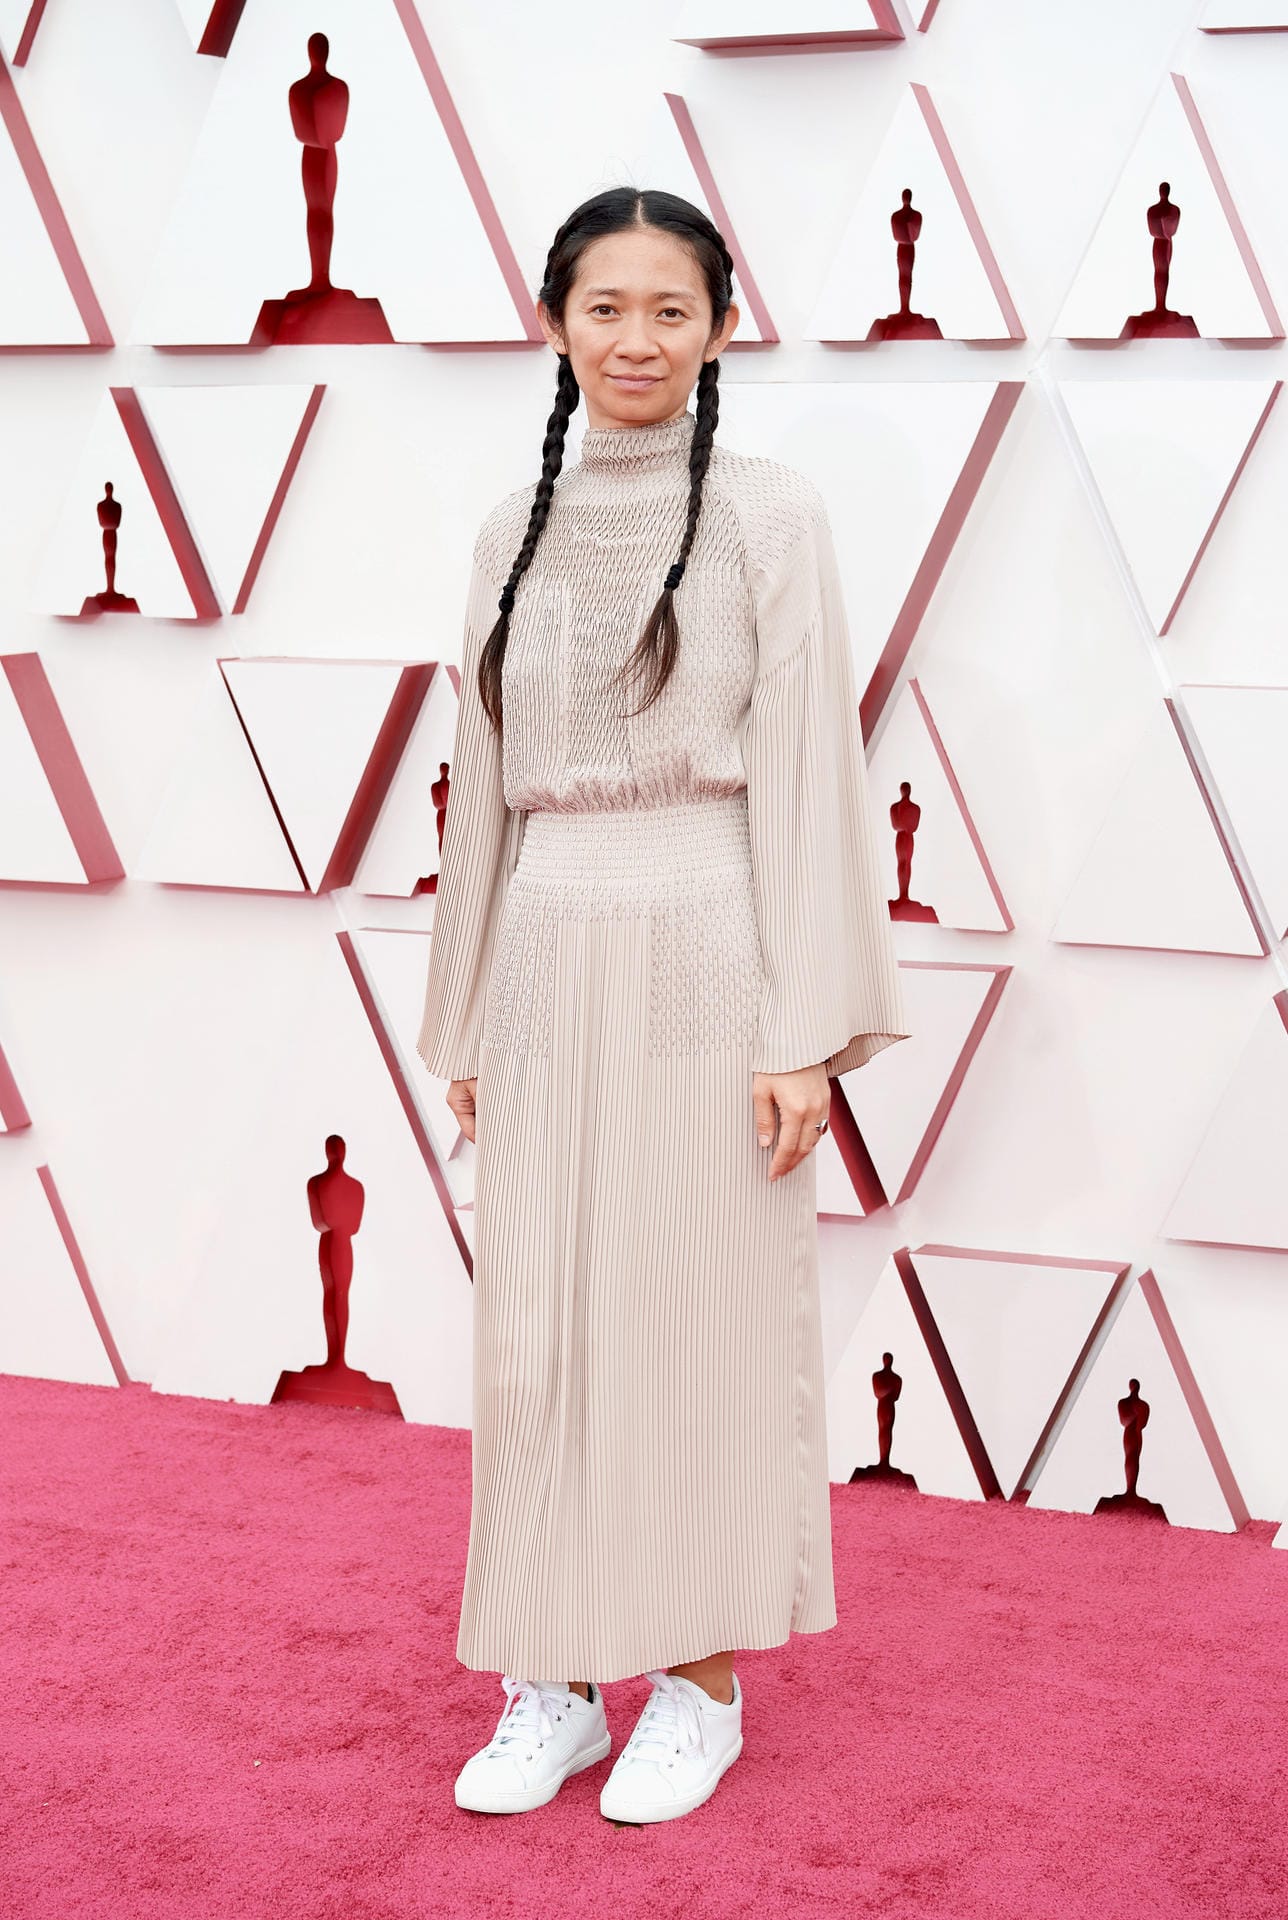 Chloé Zhao: Sie erhielt für "Nomadland" den Oscar für die beste Regie.